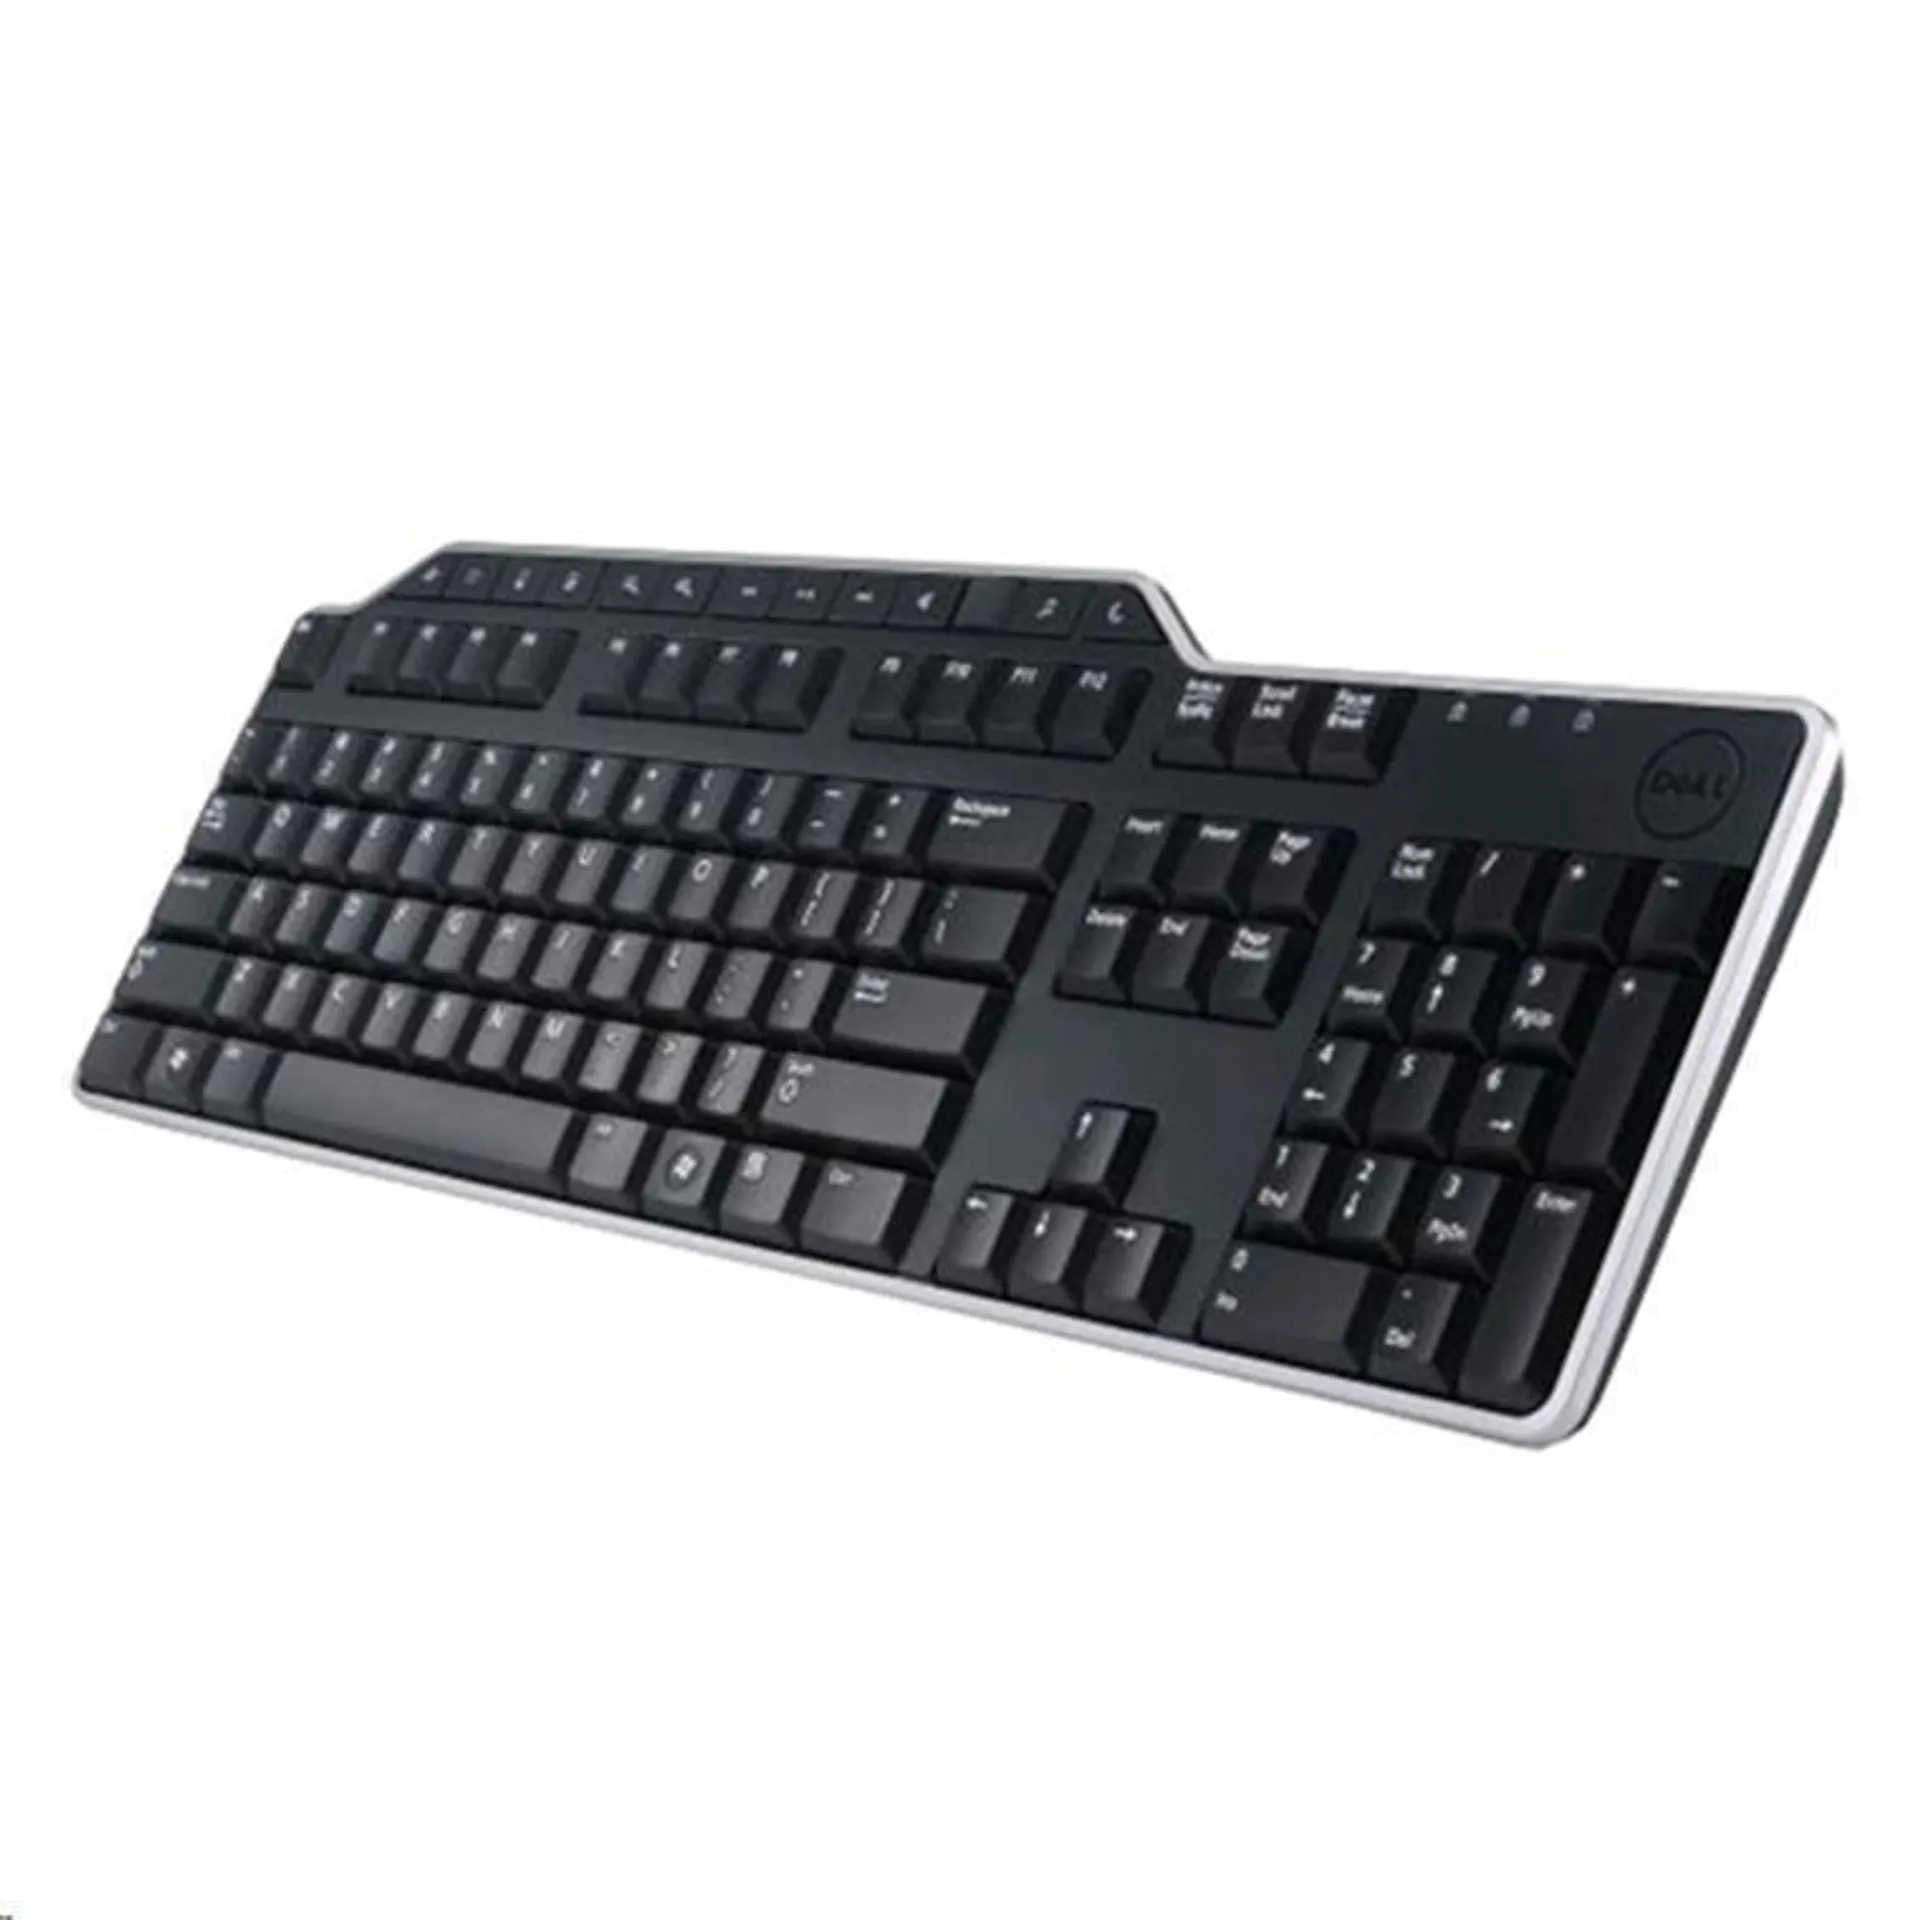 Dell KB522 580-18132 Business Multimedia Keyboard